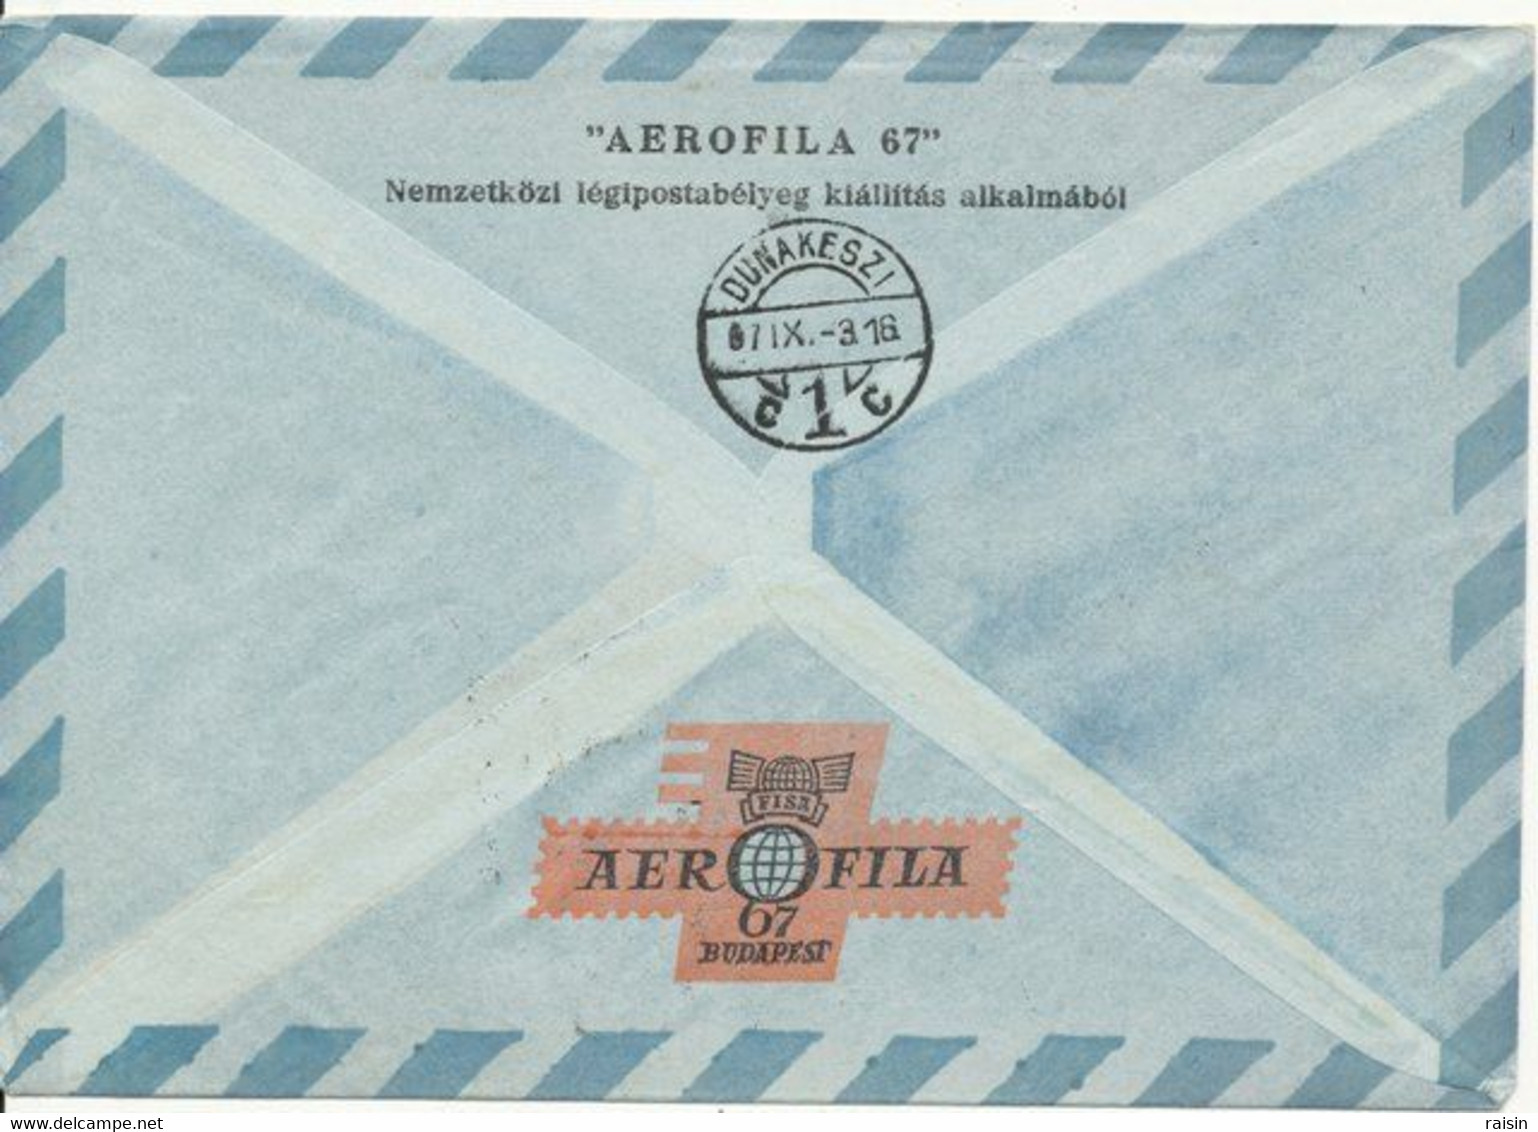 Hongrie 1967 "AEROFILA 67" Lettre Ayant Circulé Par Ballon N° 9787 TBE - Covers & Documents